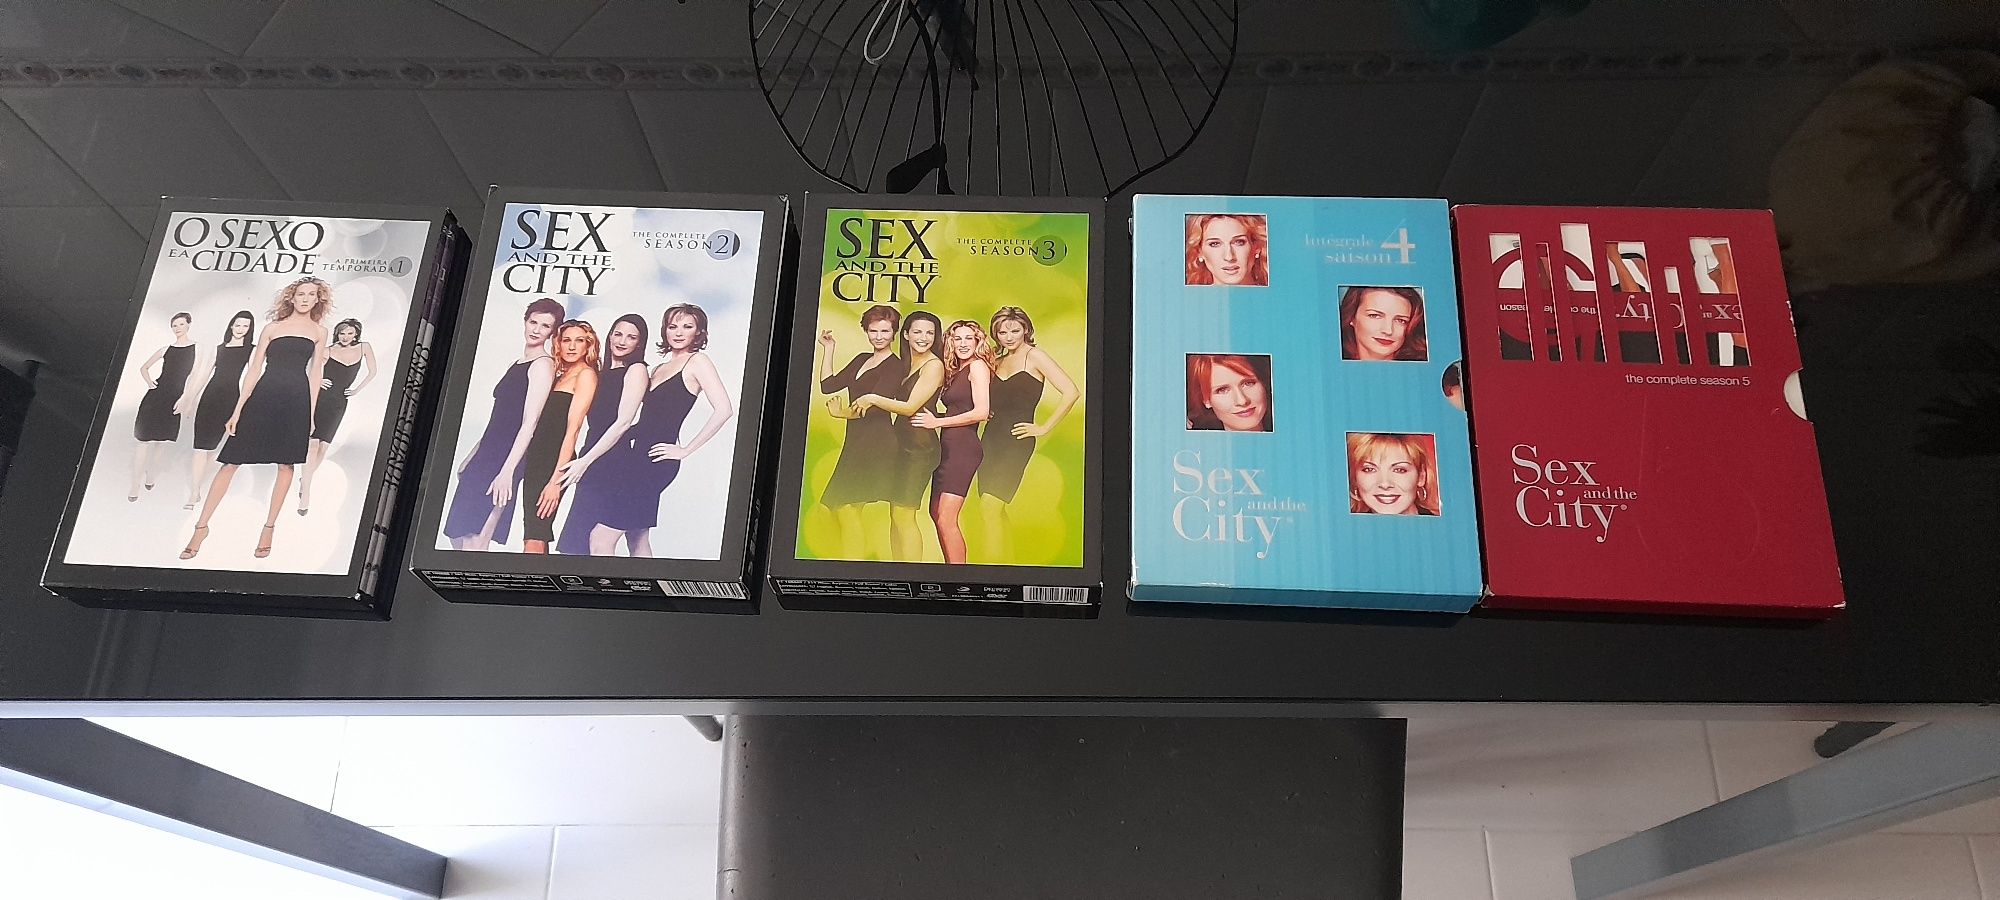 DVD's O Sexo e a Cidade